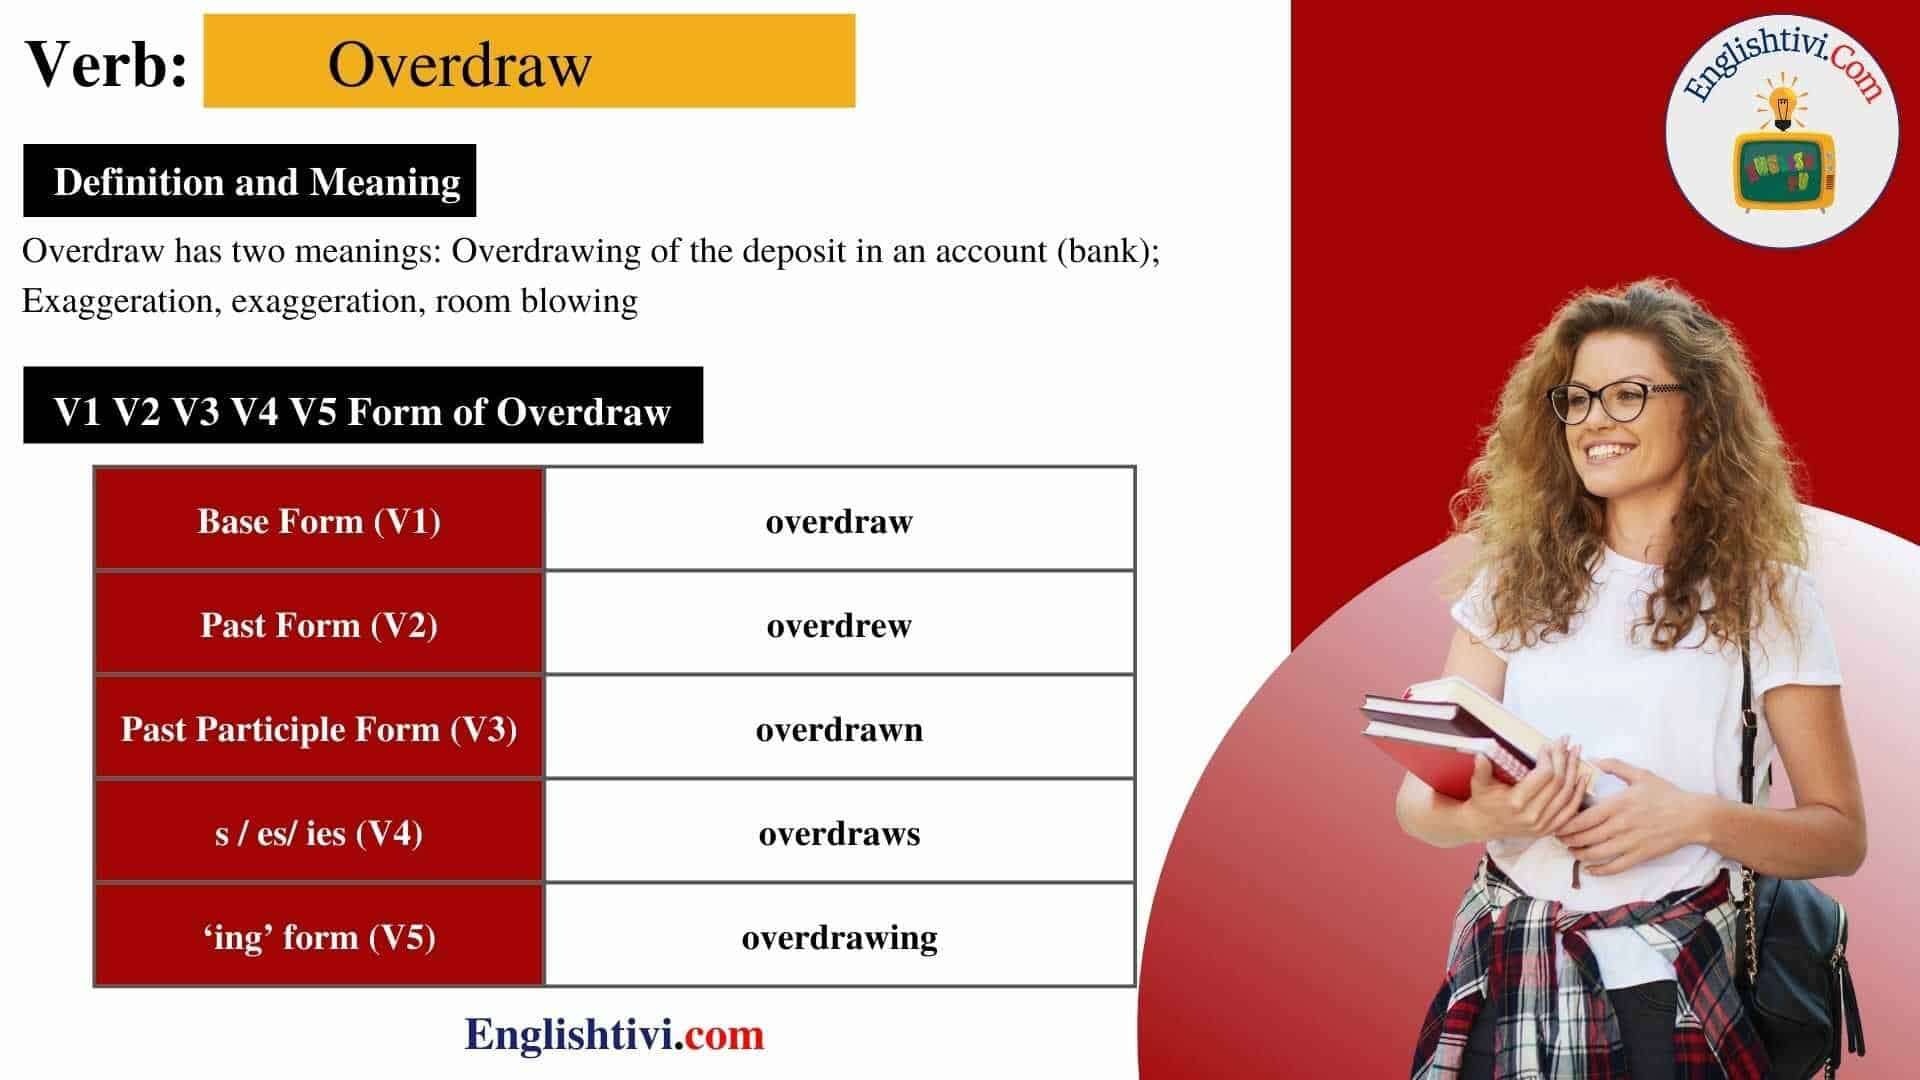 overdraw-v1-v2-v3-v4-v5-base-form-past-simple-past-participle-form-of-overdraw